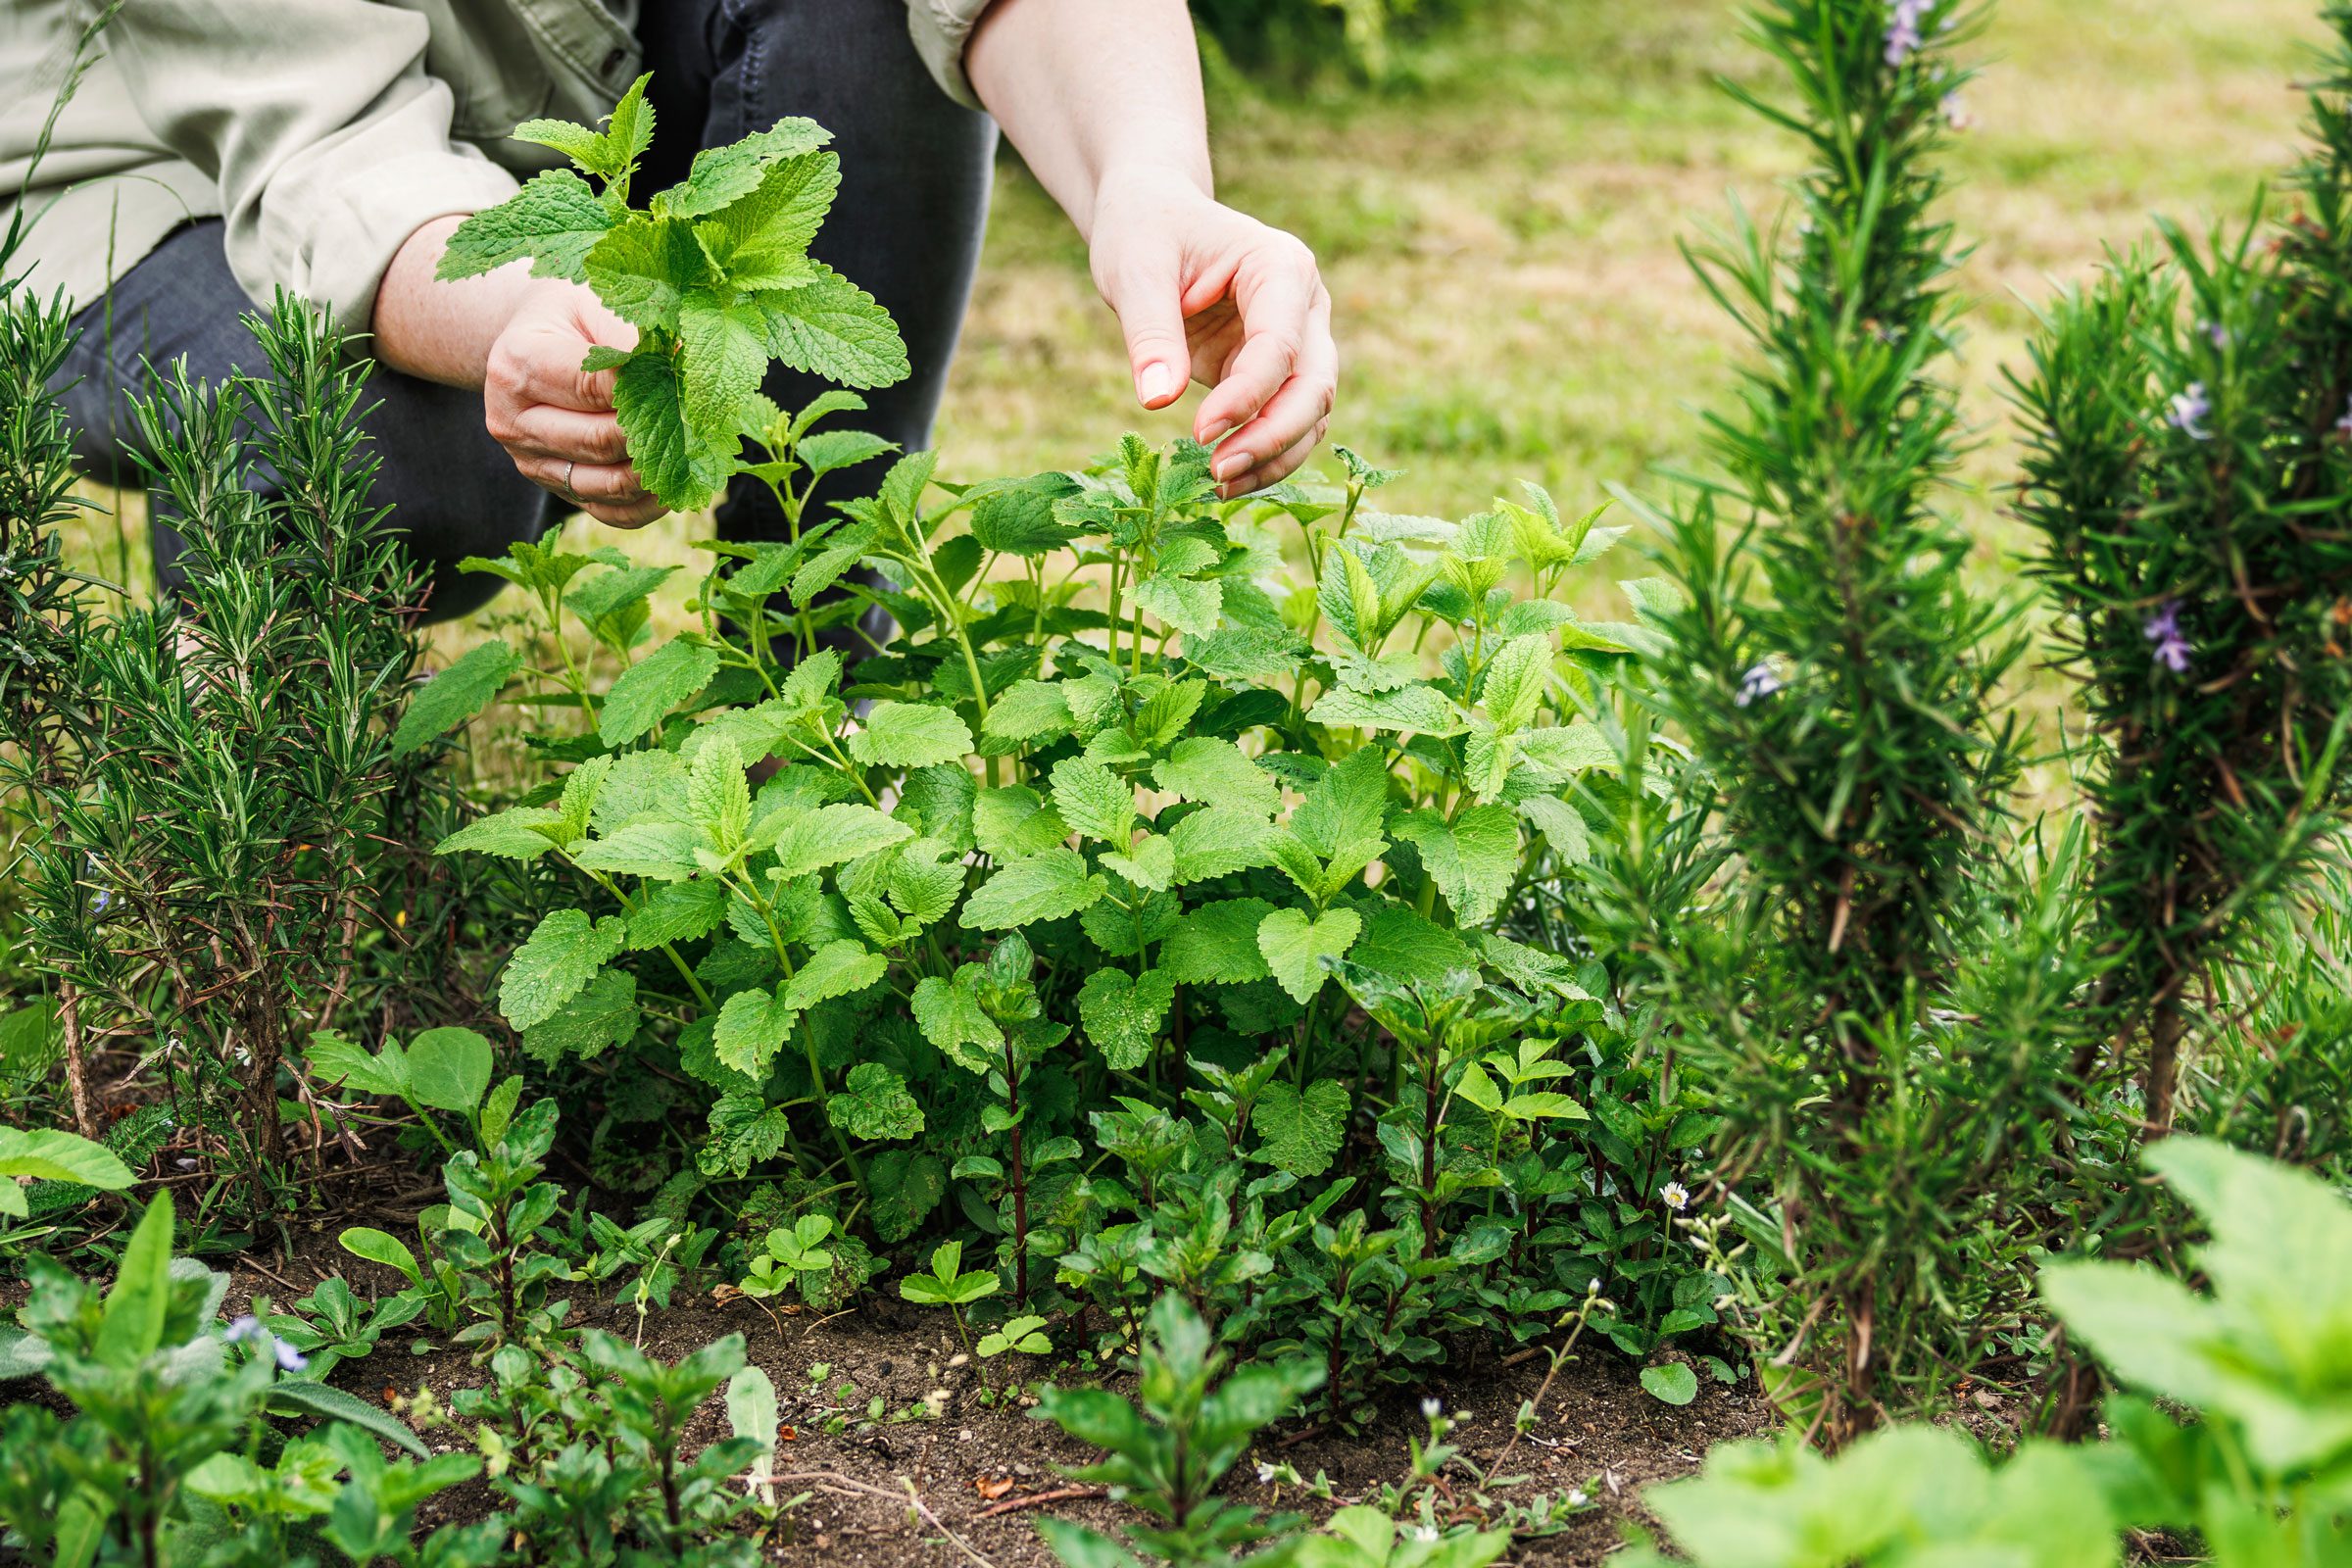 hand picking herbs in a garden